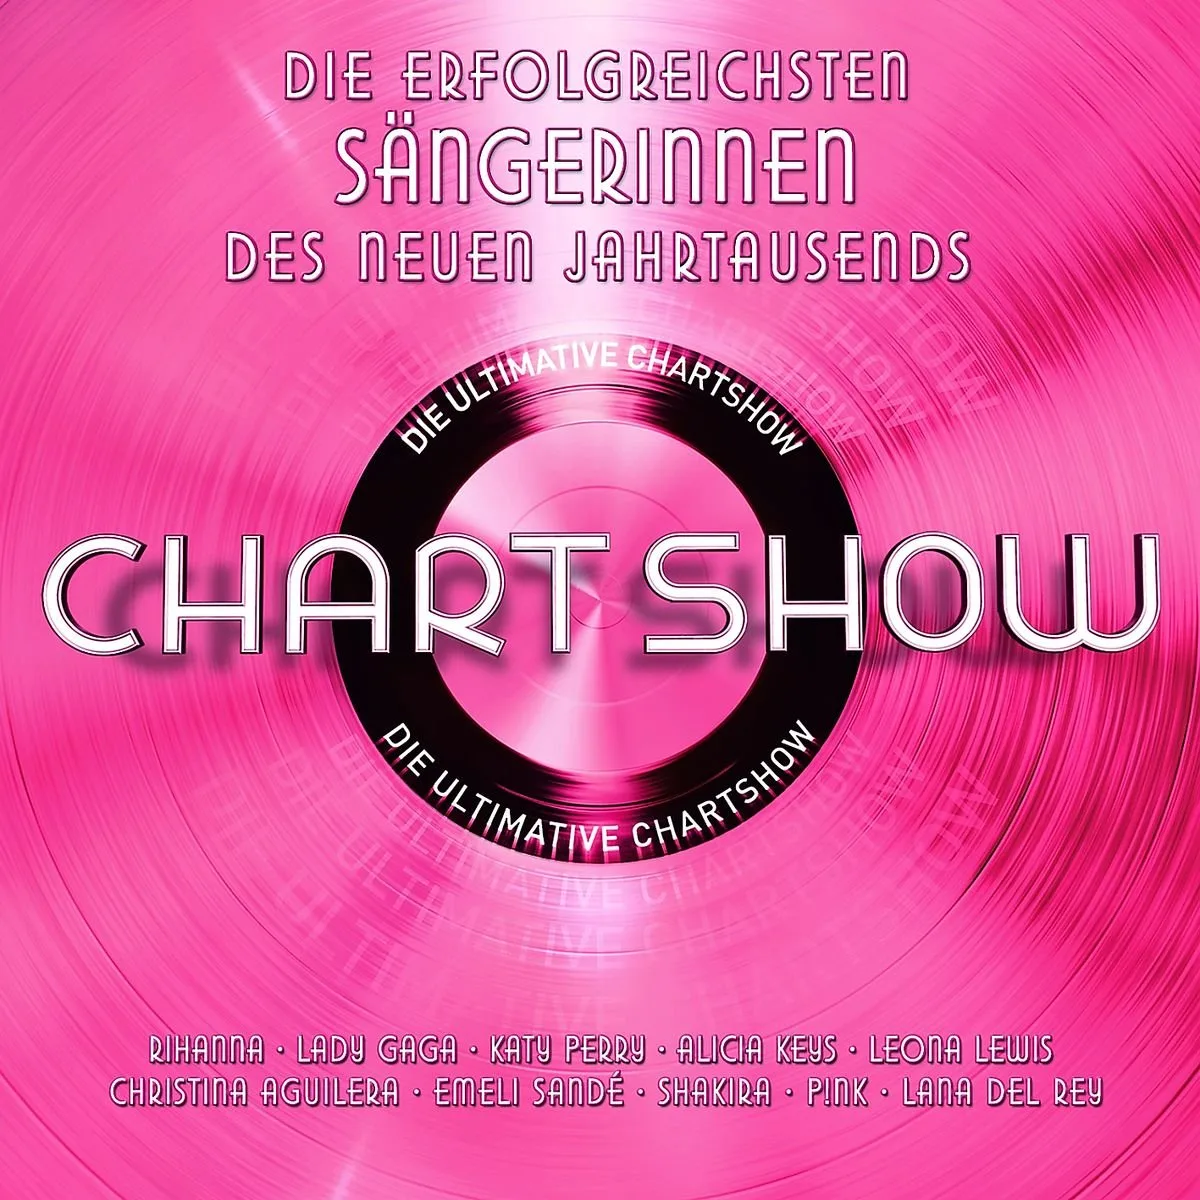 Die ultimative Chartshow: Die erfolgreichsten Alben am 08.01. bei RTL